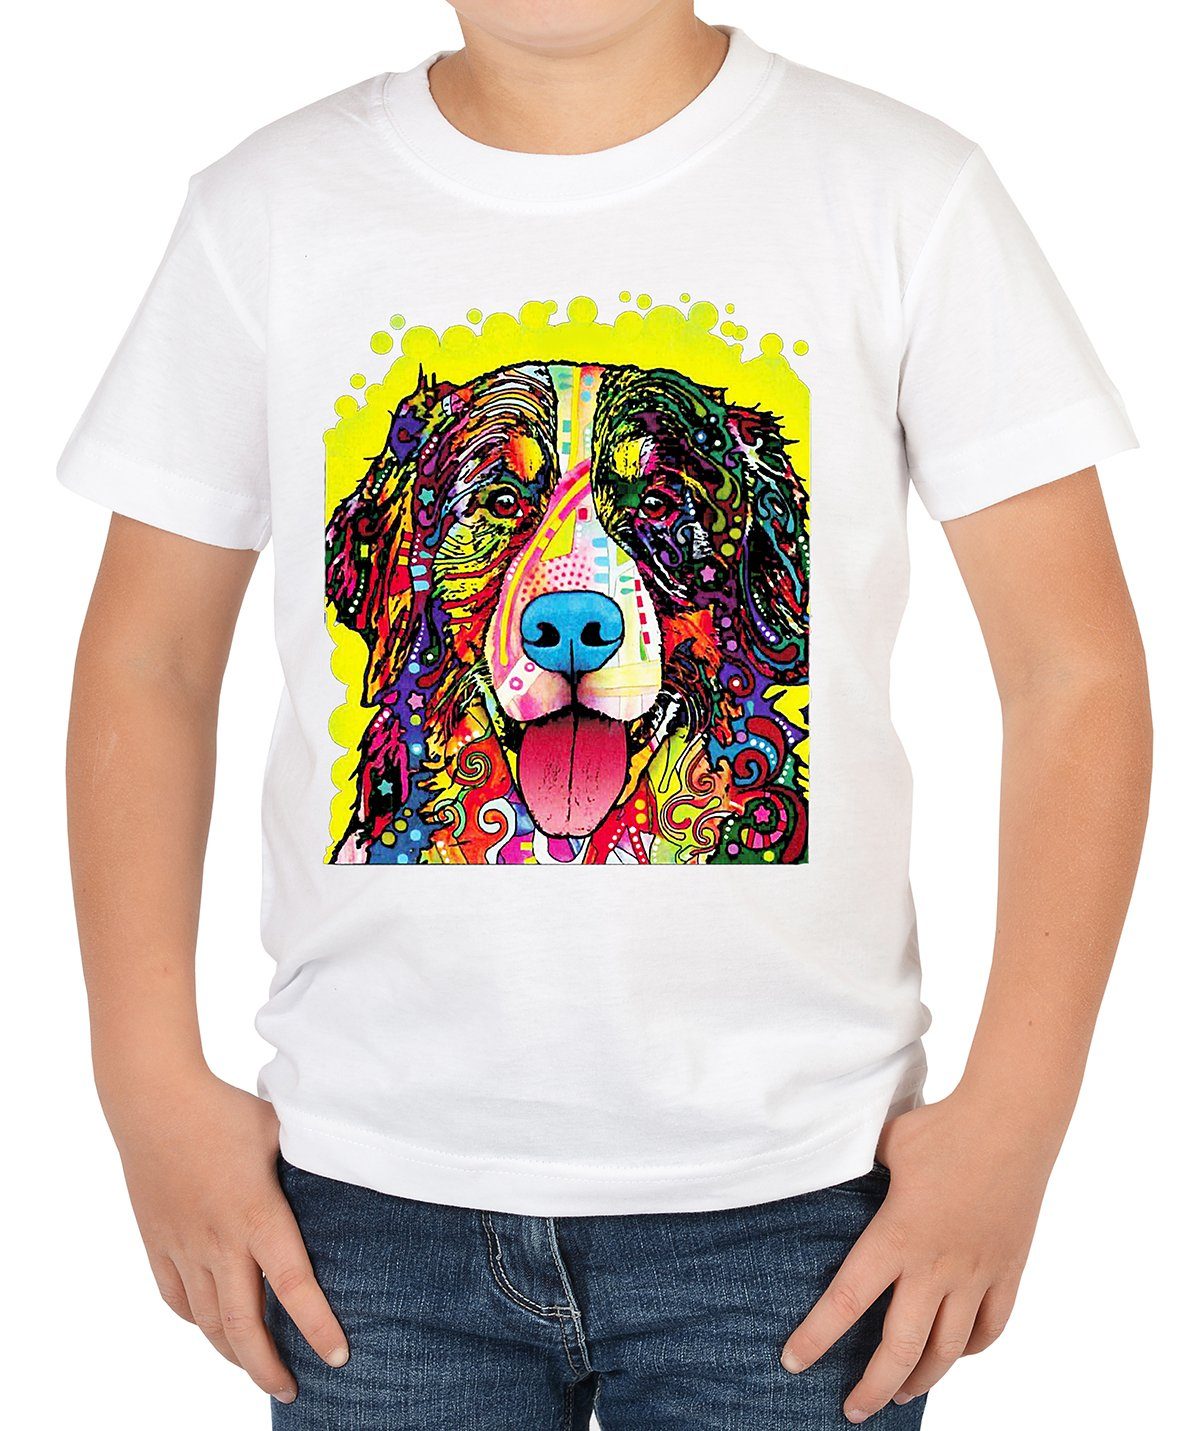 Shirts Dog Motiv T-Shirt Print-Shirt : Sennenhund Mountain - Berner Tini Shirt Kinder Kinder Hunde buntes Bernese